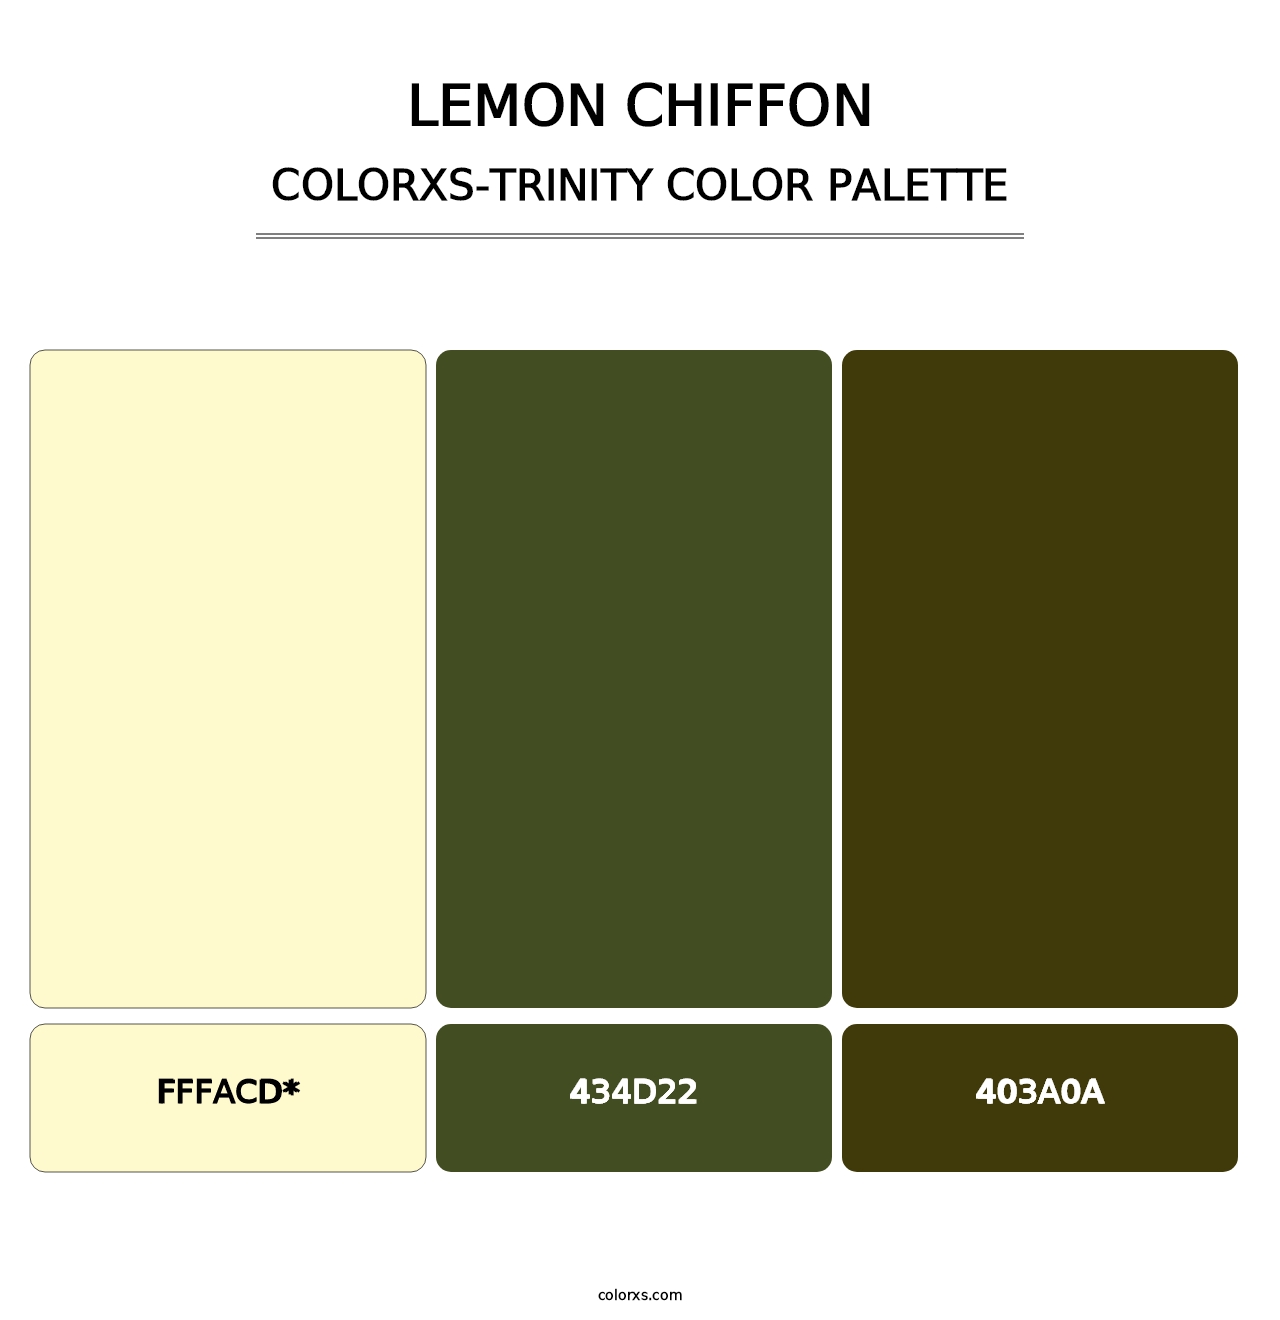 Lemon Chiffon - Colorxs Trinity Palette